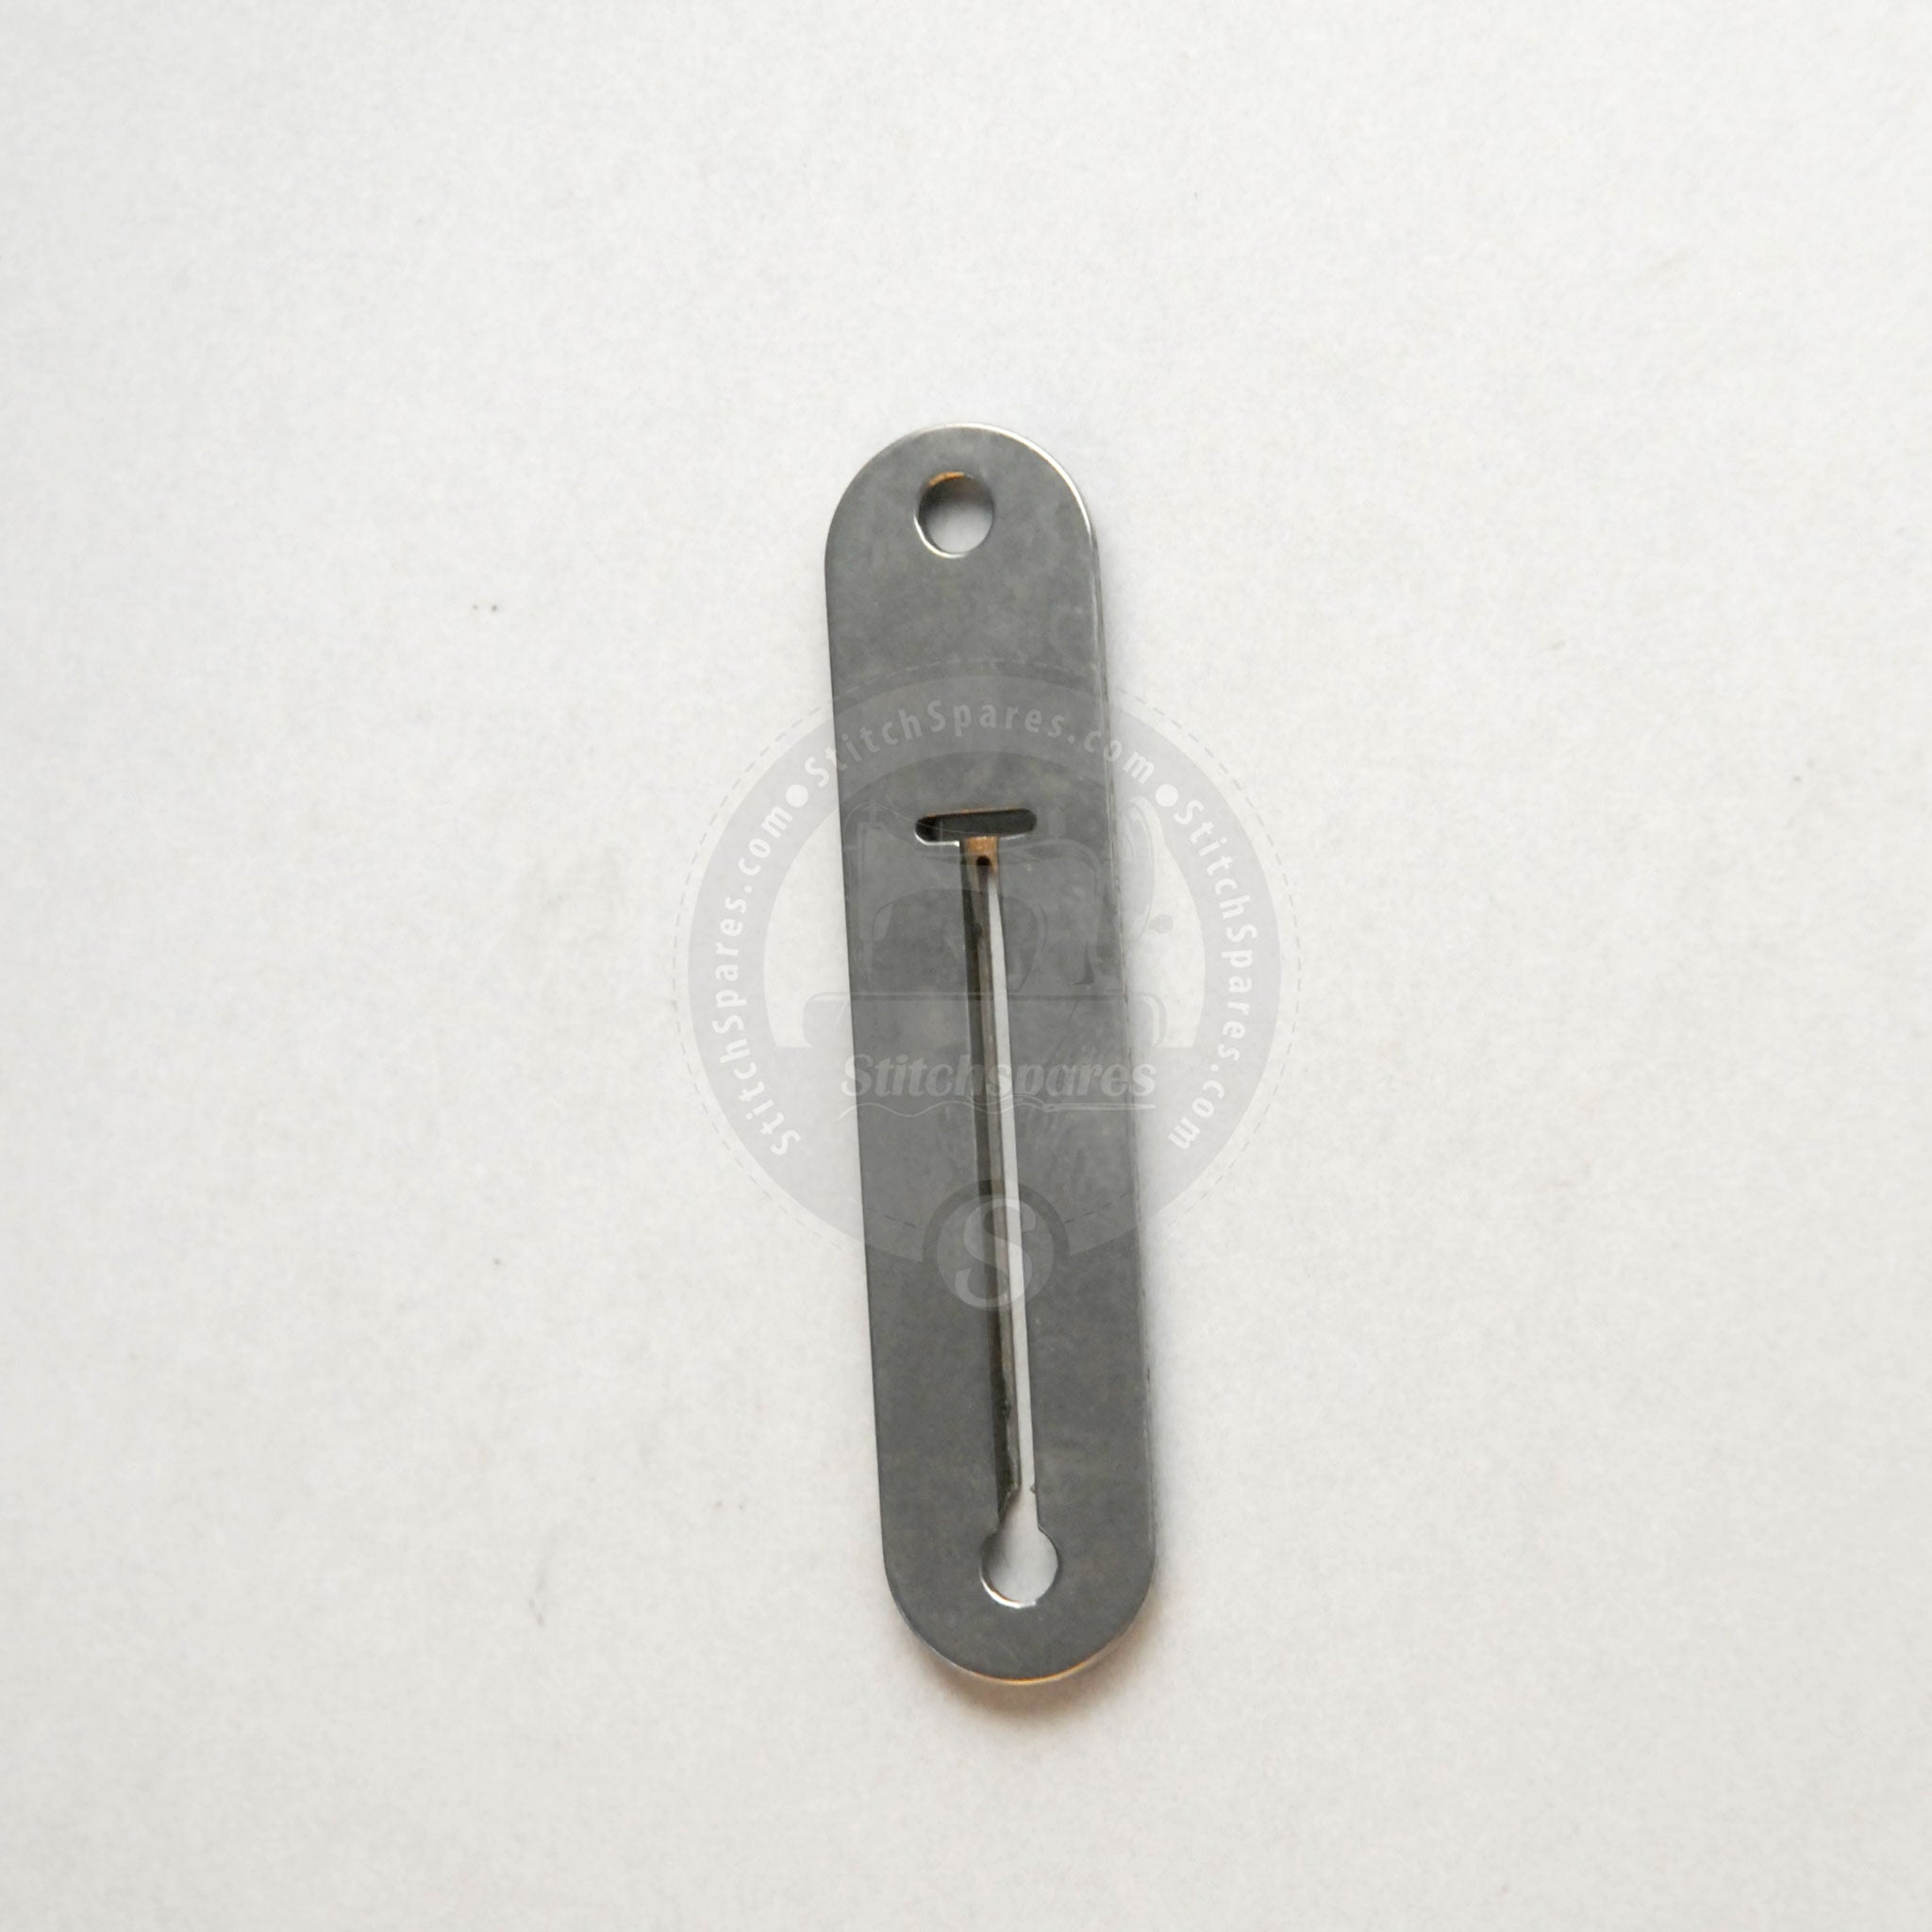 Placa de aguja JUKI LBH-781 (#B2402-771-000) Piezas de repuesto para máquina de coser con orificio de botón